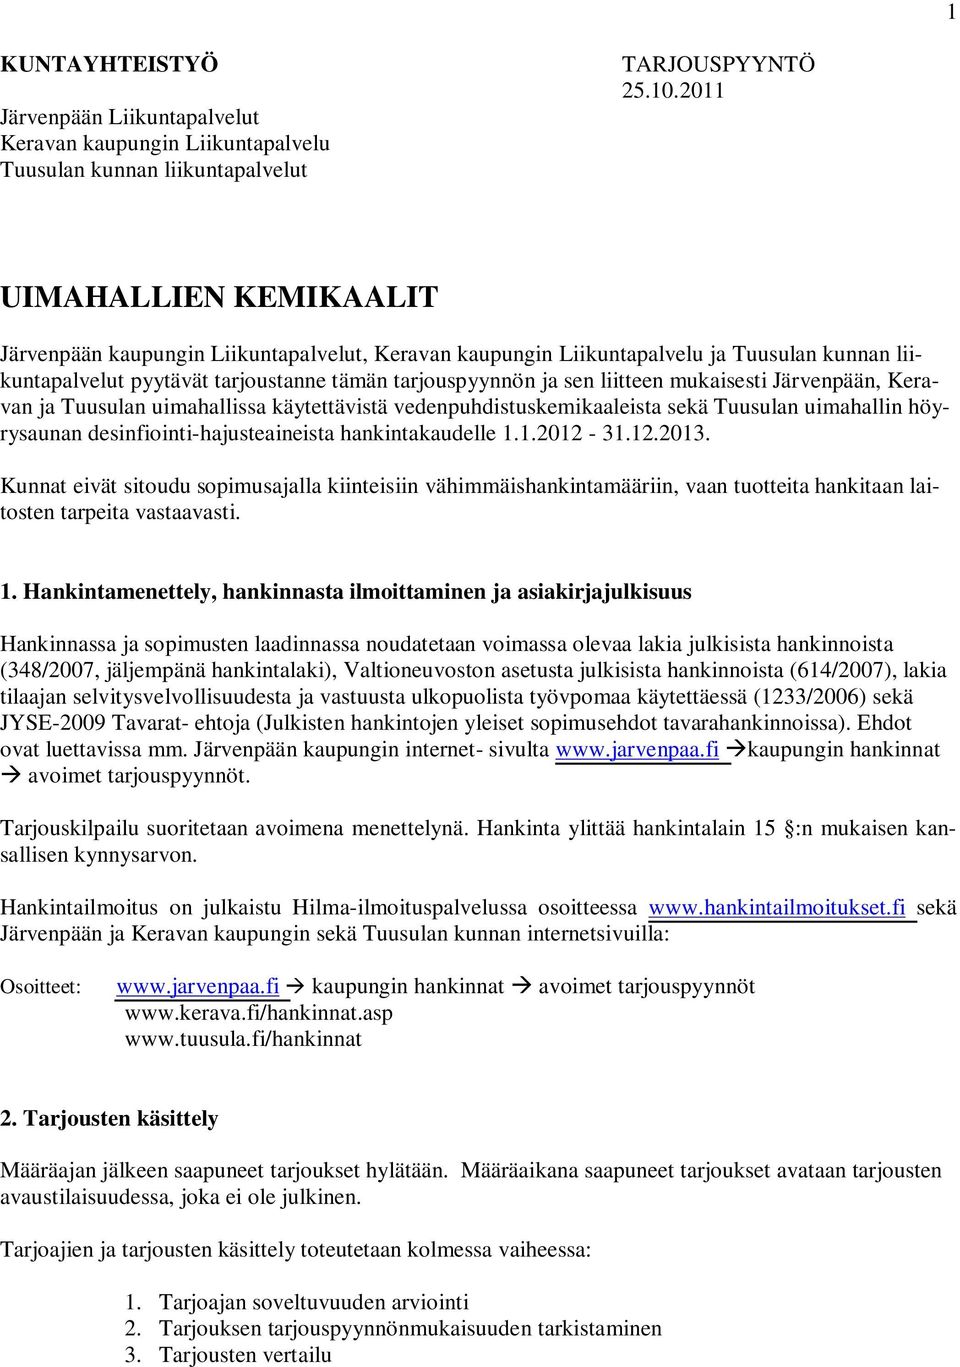 mukaisesti Järvenpään, Keravan ja Tuusulan uimahallissa käytettävistä vedenpuhdistuskemikaaleista sekä Tuusulan uimahallin höyrysaunan desinfiointi-hajusteaineista hankintakaudelle 1.1.2012-31.12.2013.